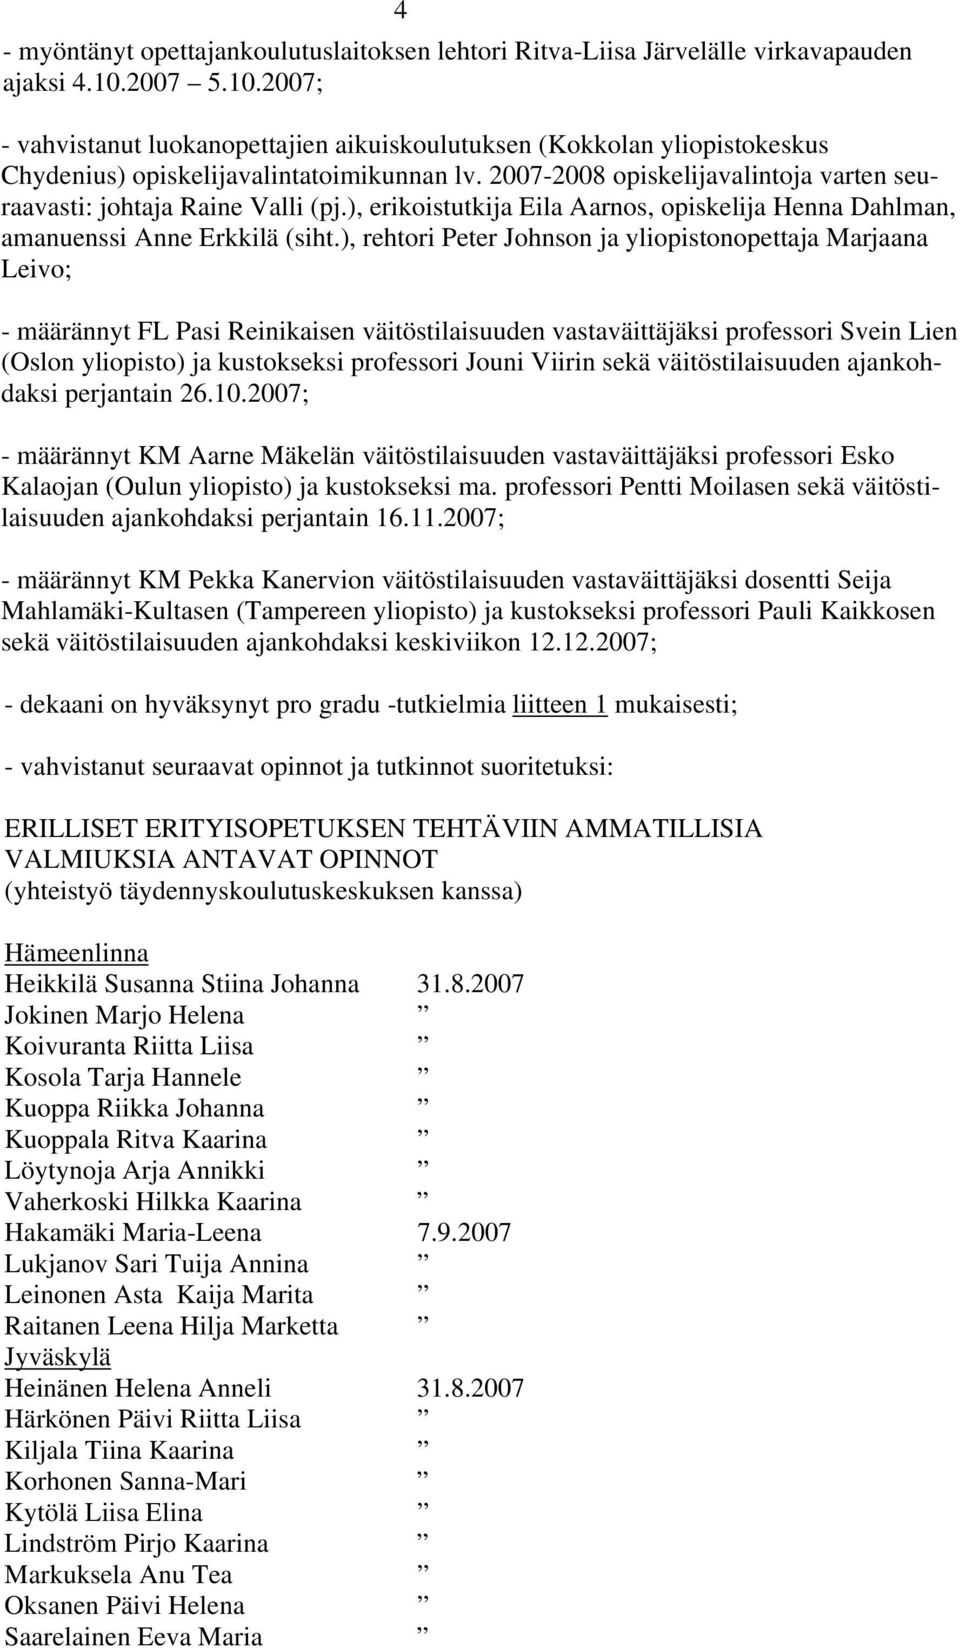 2007-2008 opiskelijavalintoja varten seuraavasti: johtaja Raine Valli (pj.), erikoistutkija Eila Aarnos, opiskelija Henna Dahlman, amanuenssi Anne Erkkilä (siht.